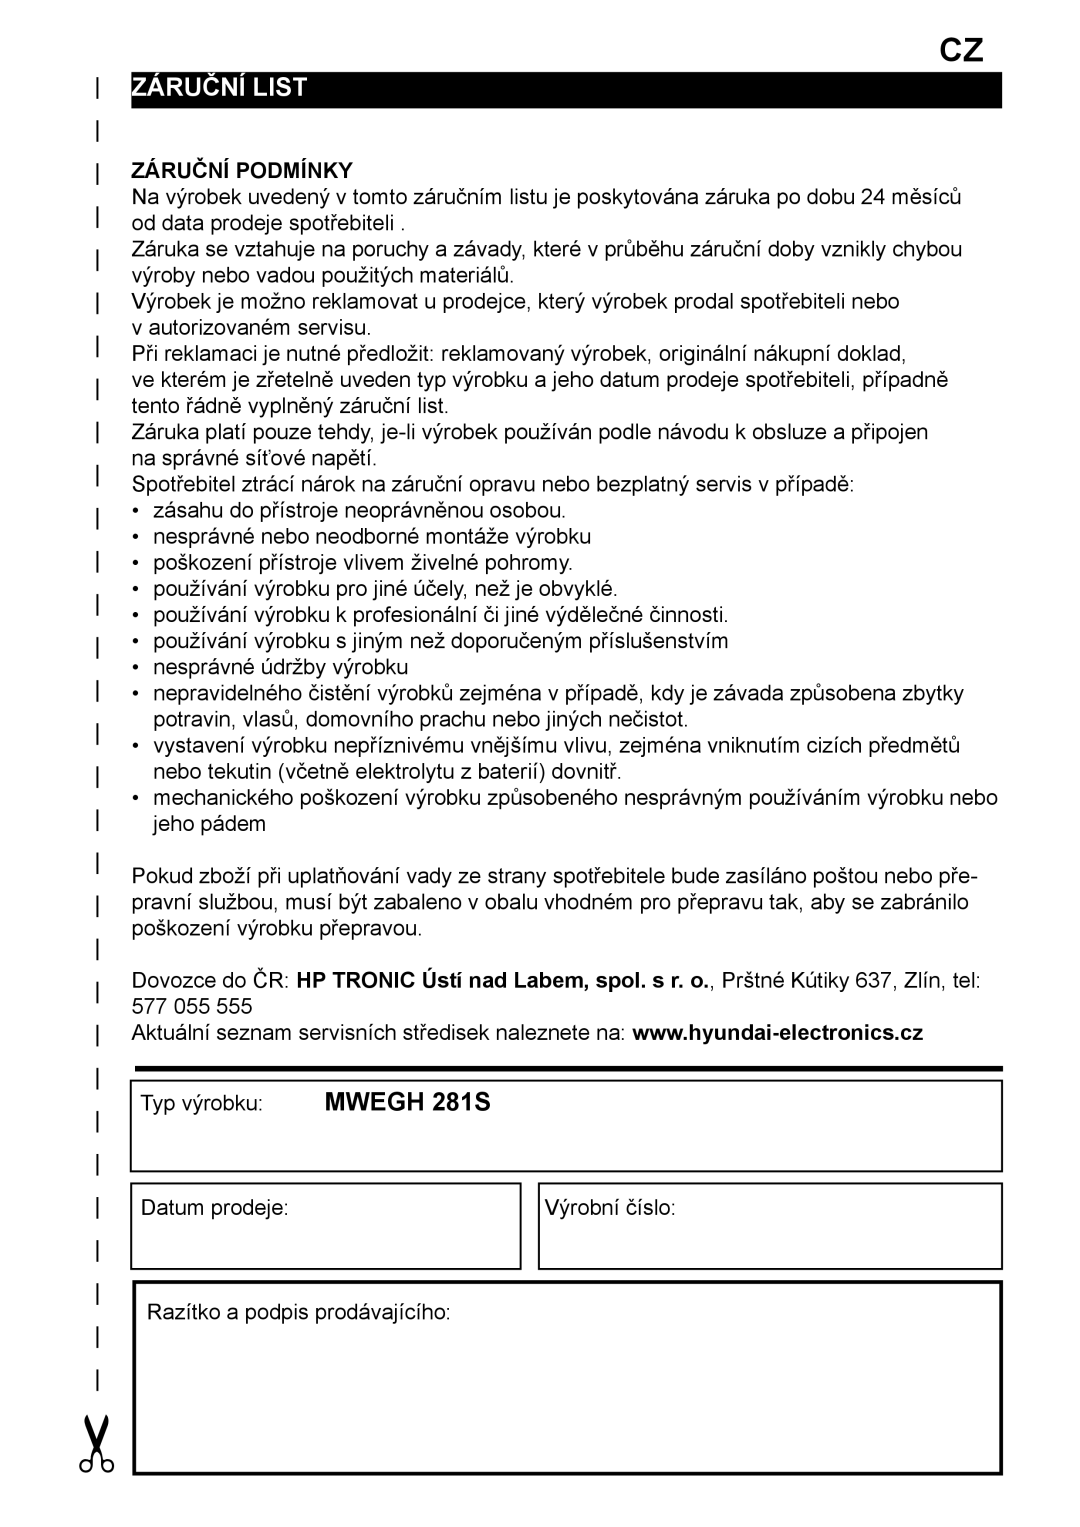 Hyundai MWEGH 281S manual Záruční list, Záruční Podmínky 